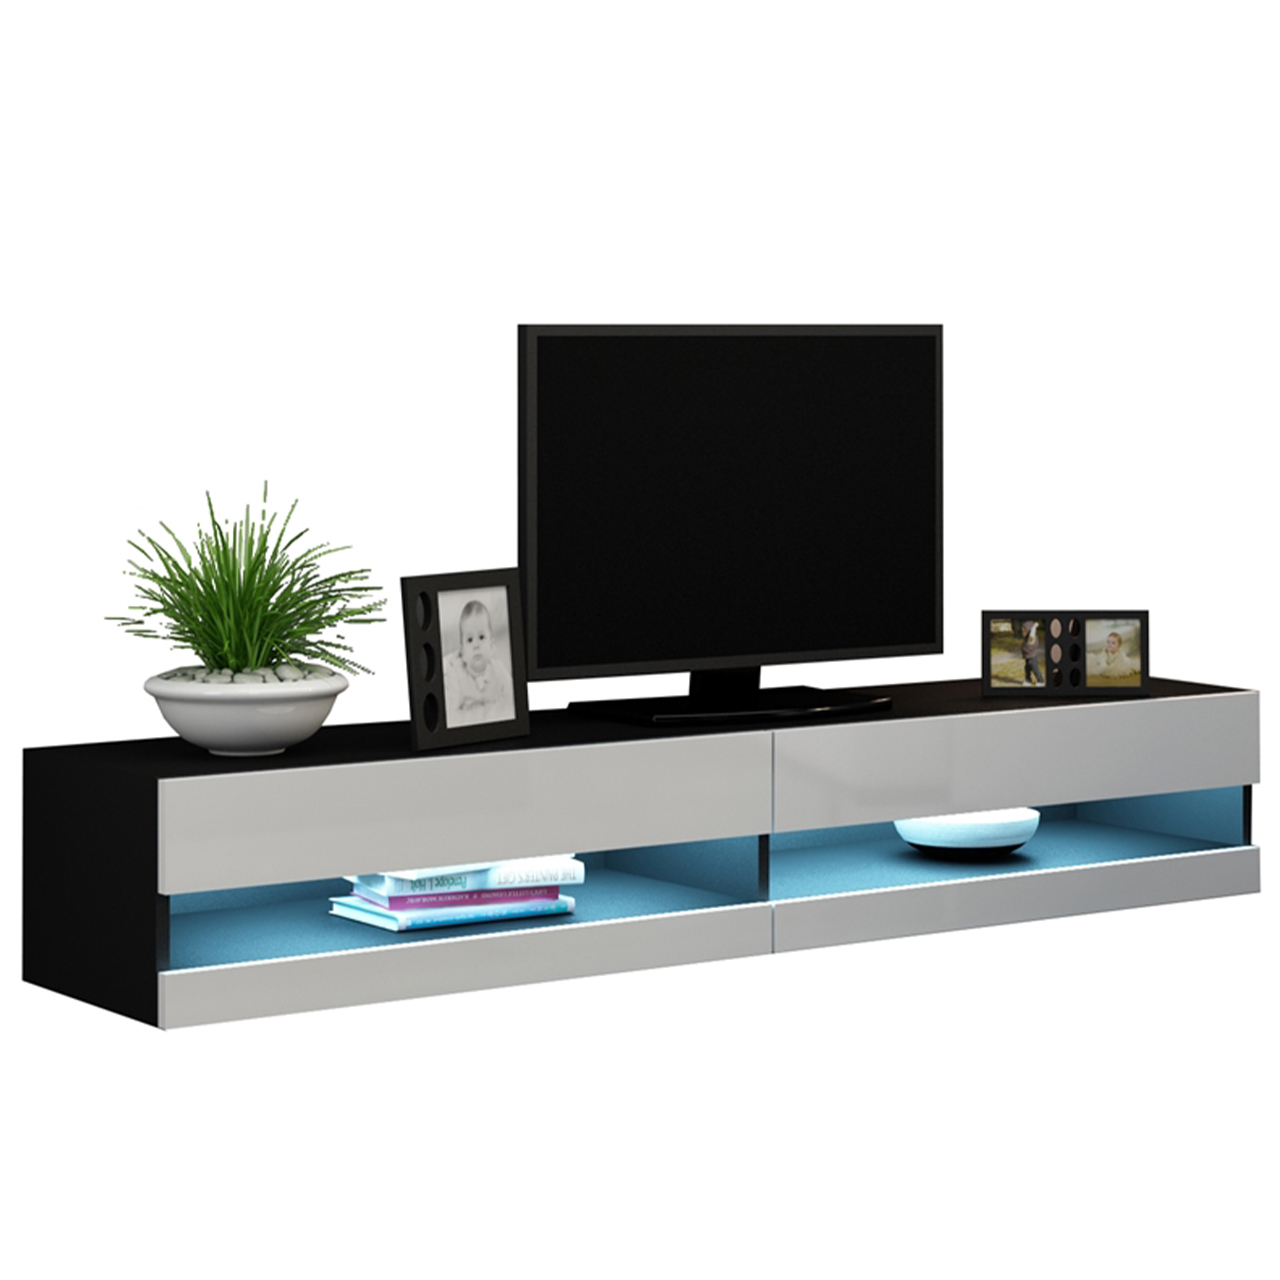 TV Stand 180 VIGO NEW VG9C black / white gloss